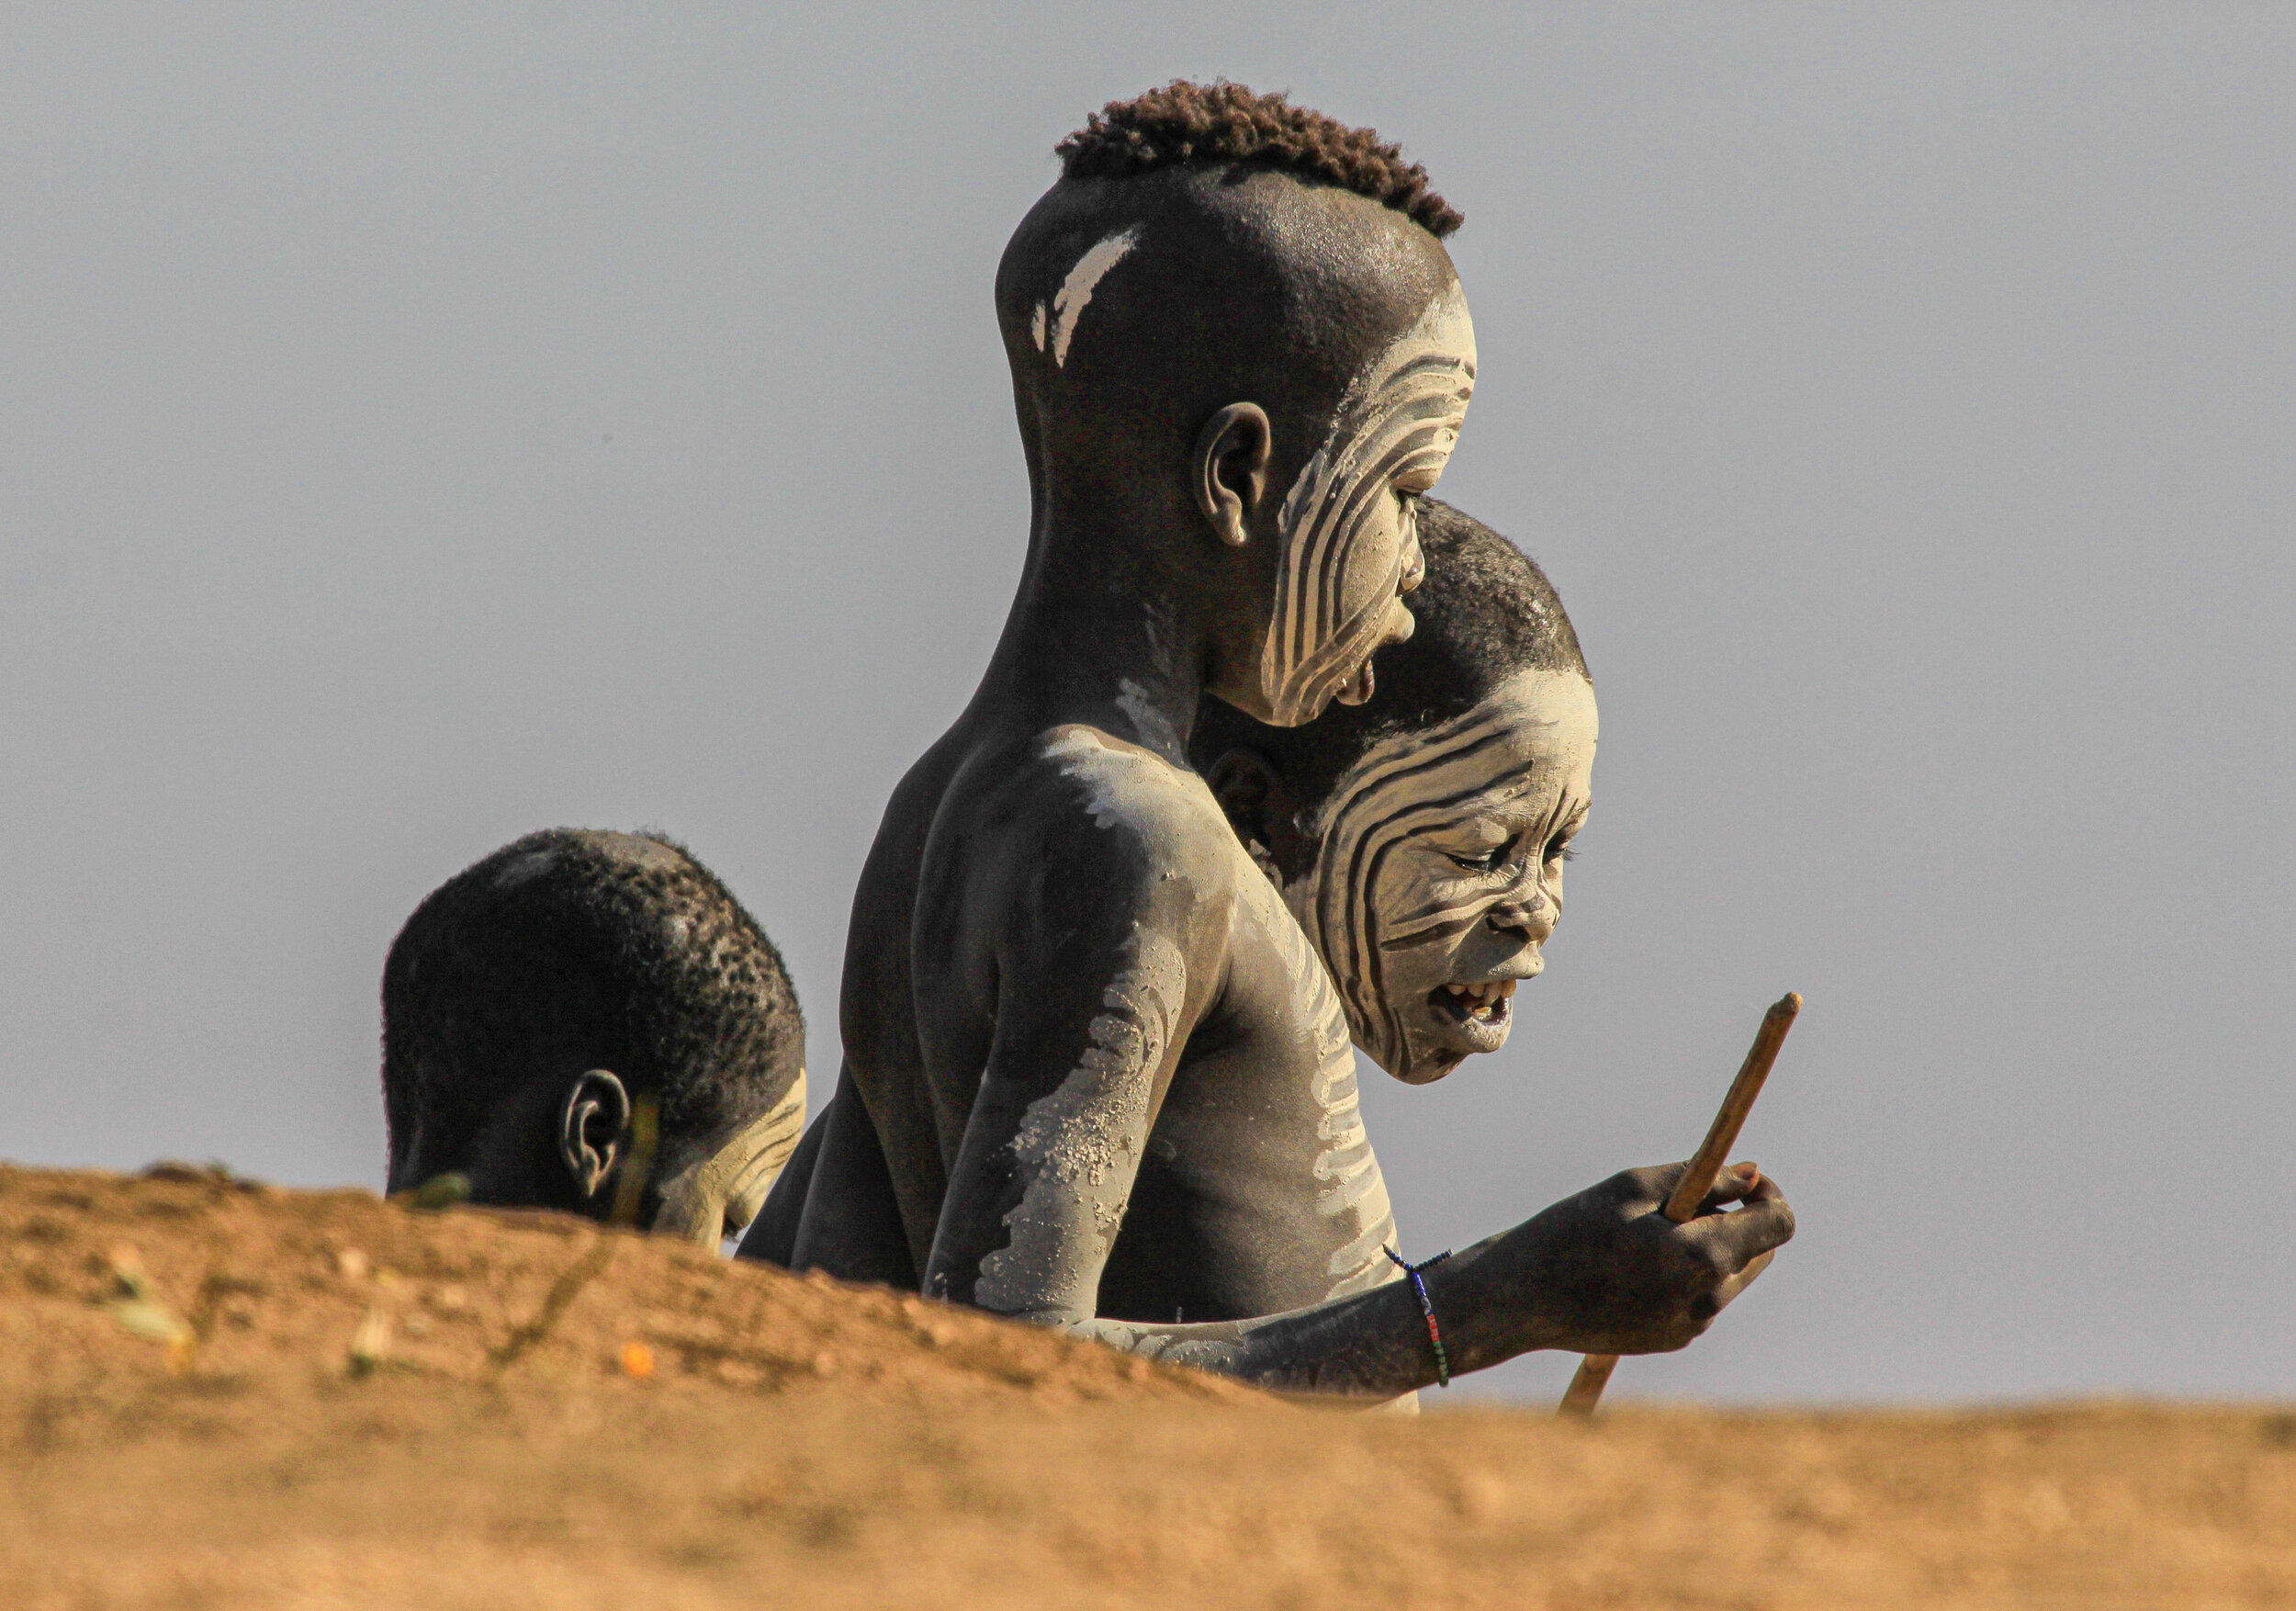  Karo boys, Omo Valley, Ethiopia 